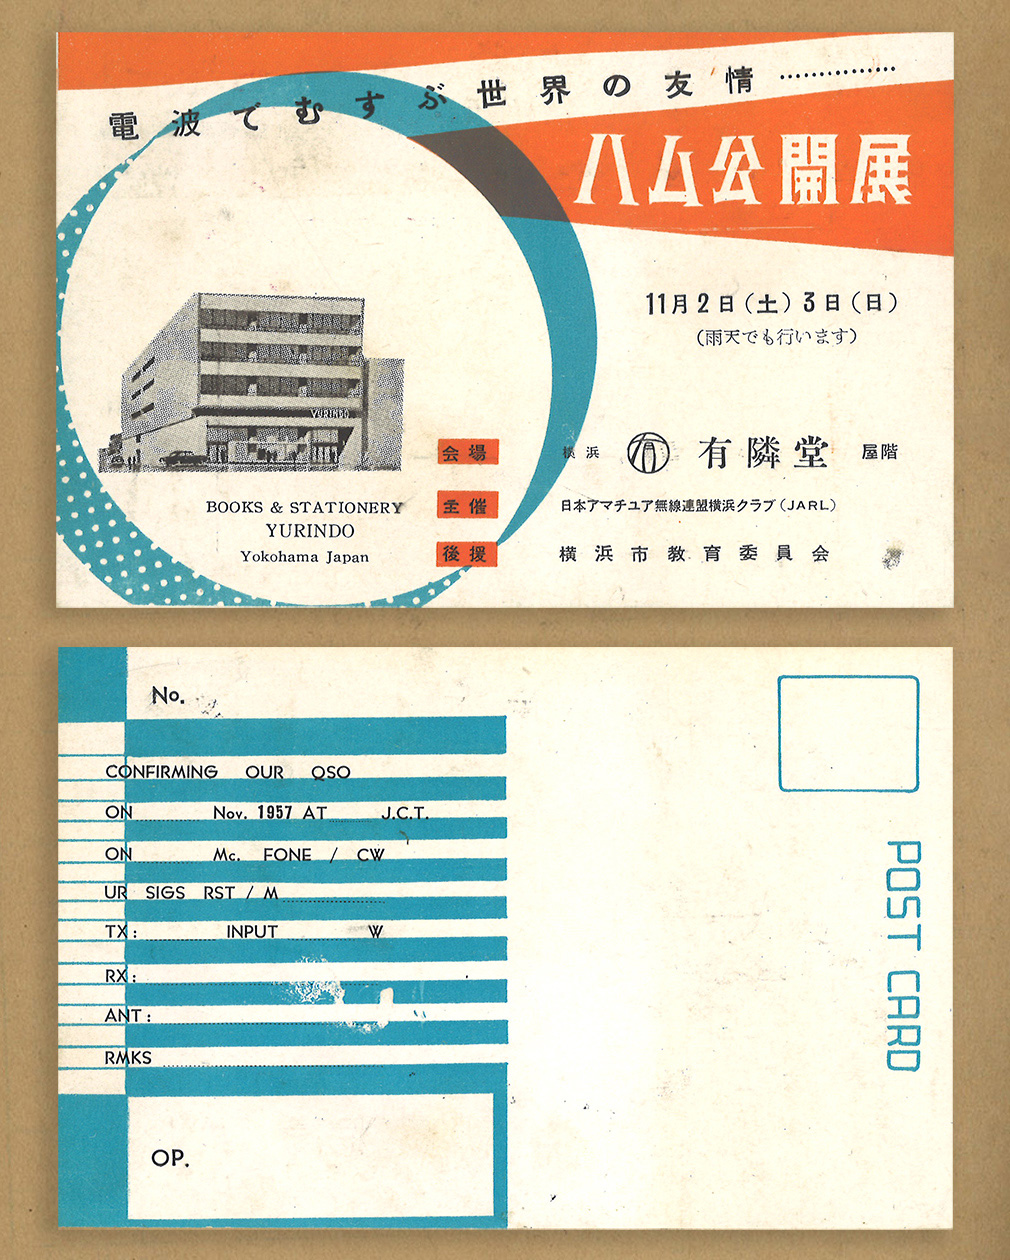 展示会案内ポストカード「ハム公開展」｜昭和31年〜32年頃